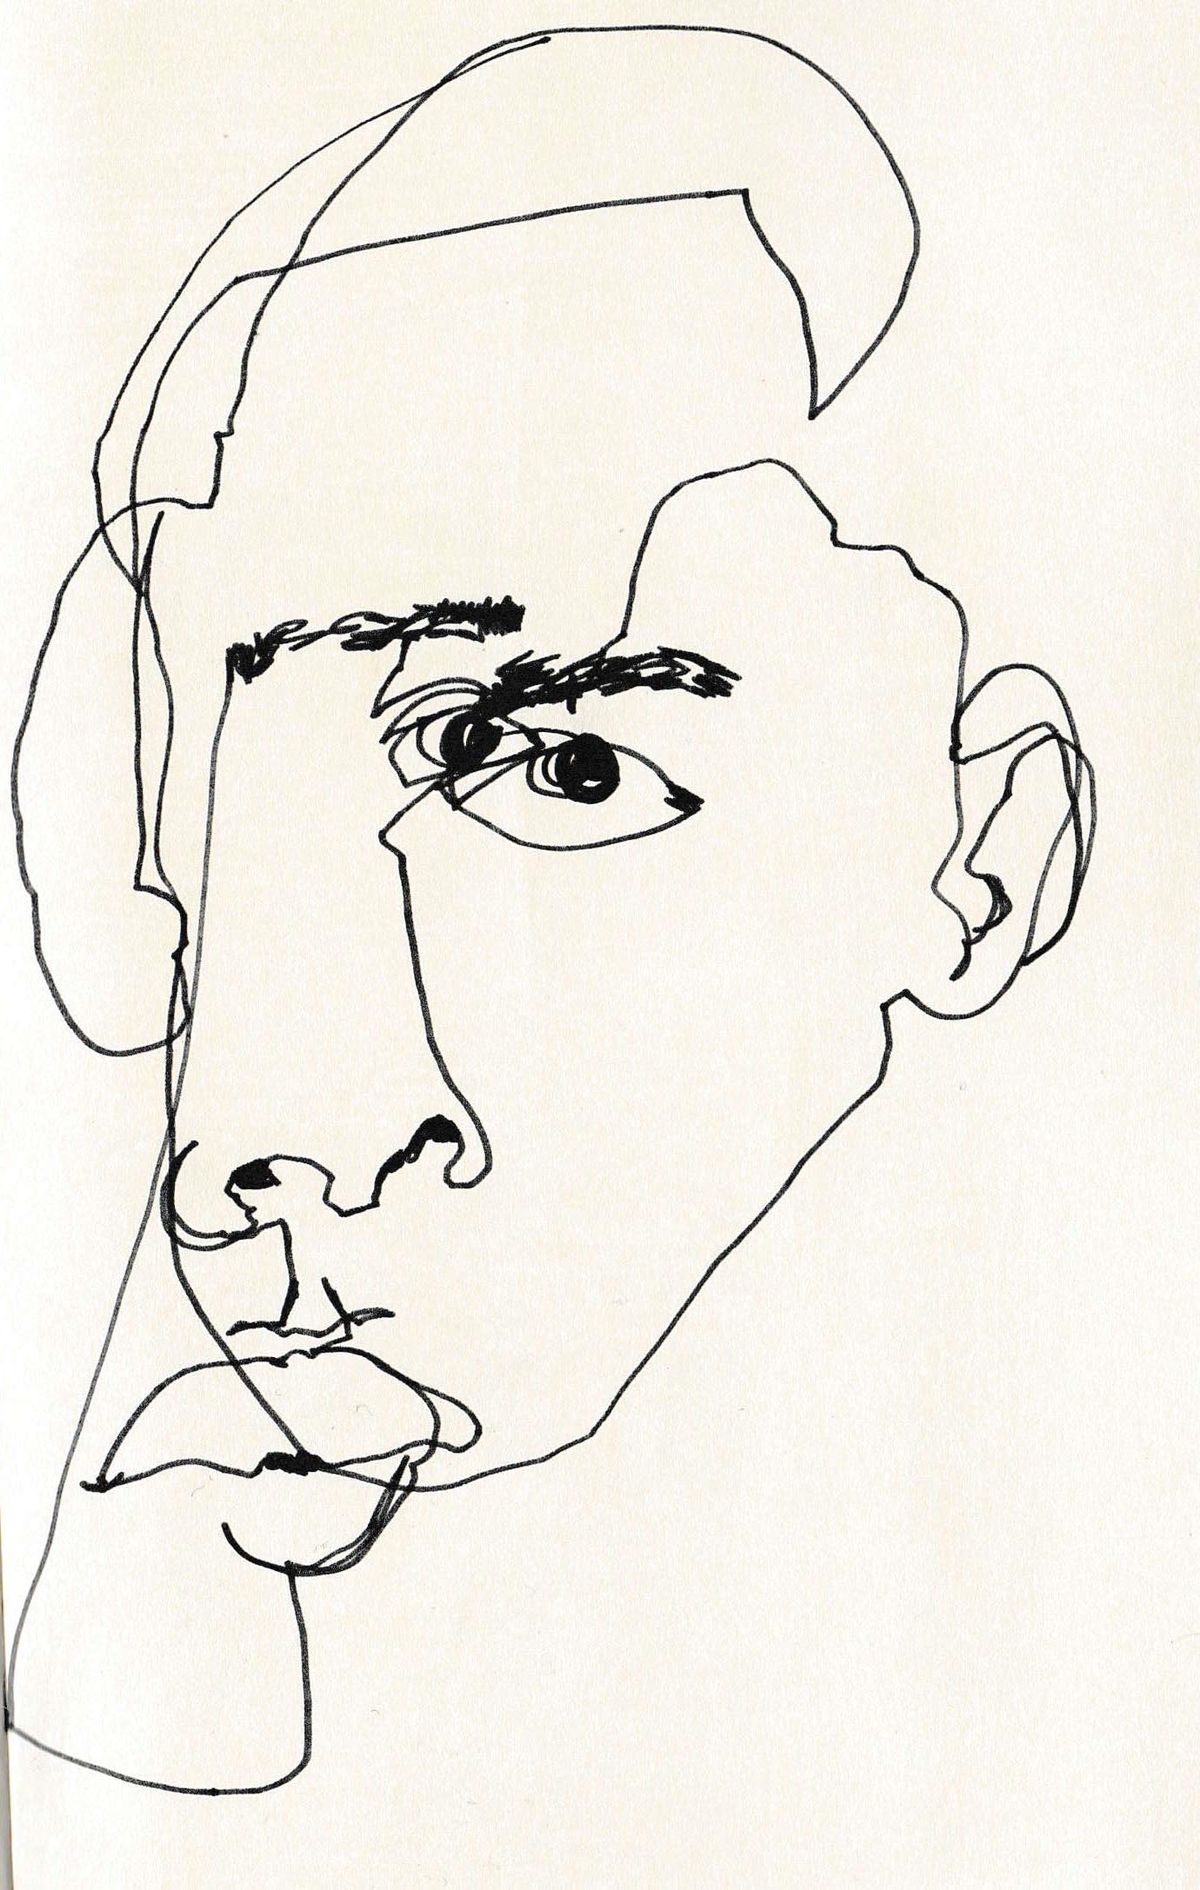 February James «Blind Contour Line Drawing» Es la imagen de un rostro abstracto que pretende reforzar la fealdad de Sócrates